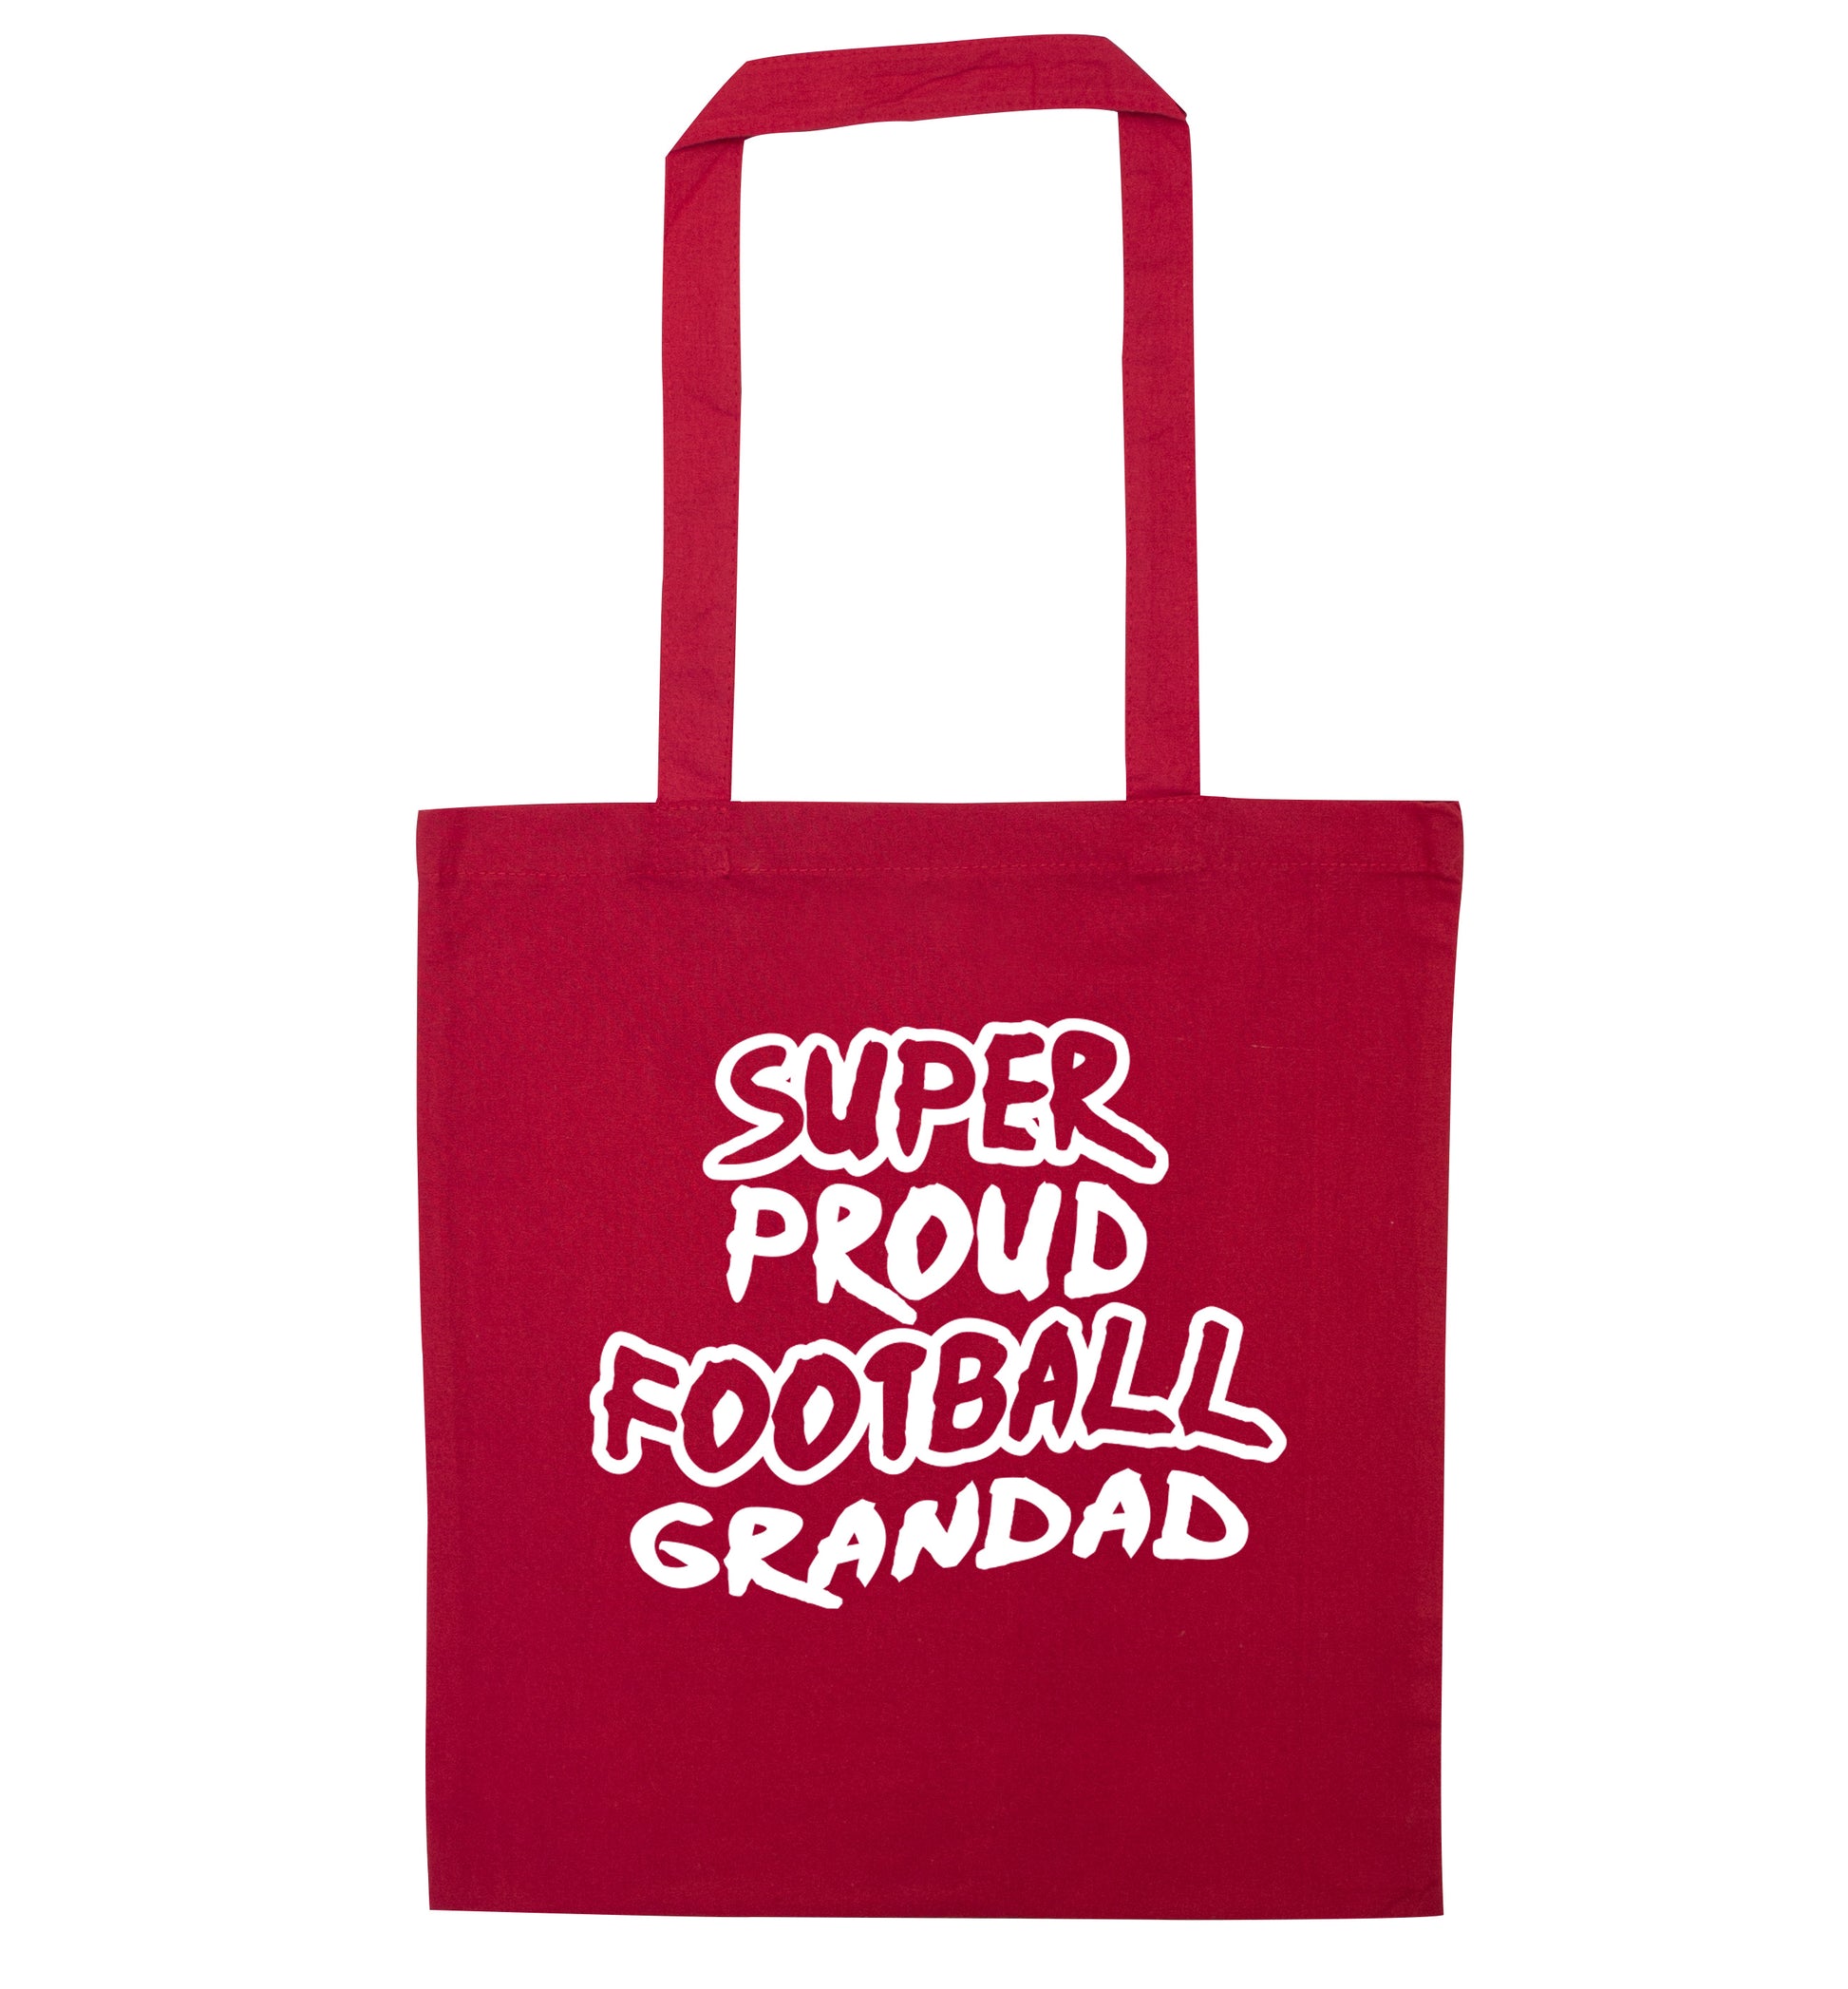 Super proud football grandad red tote bag